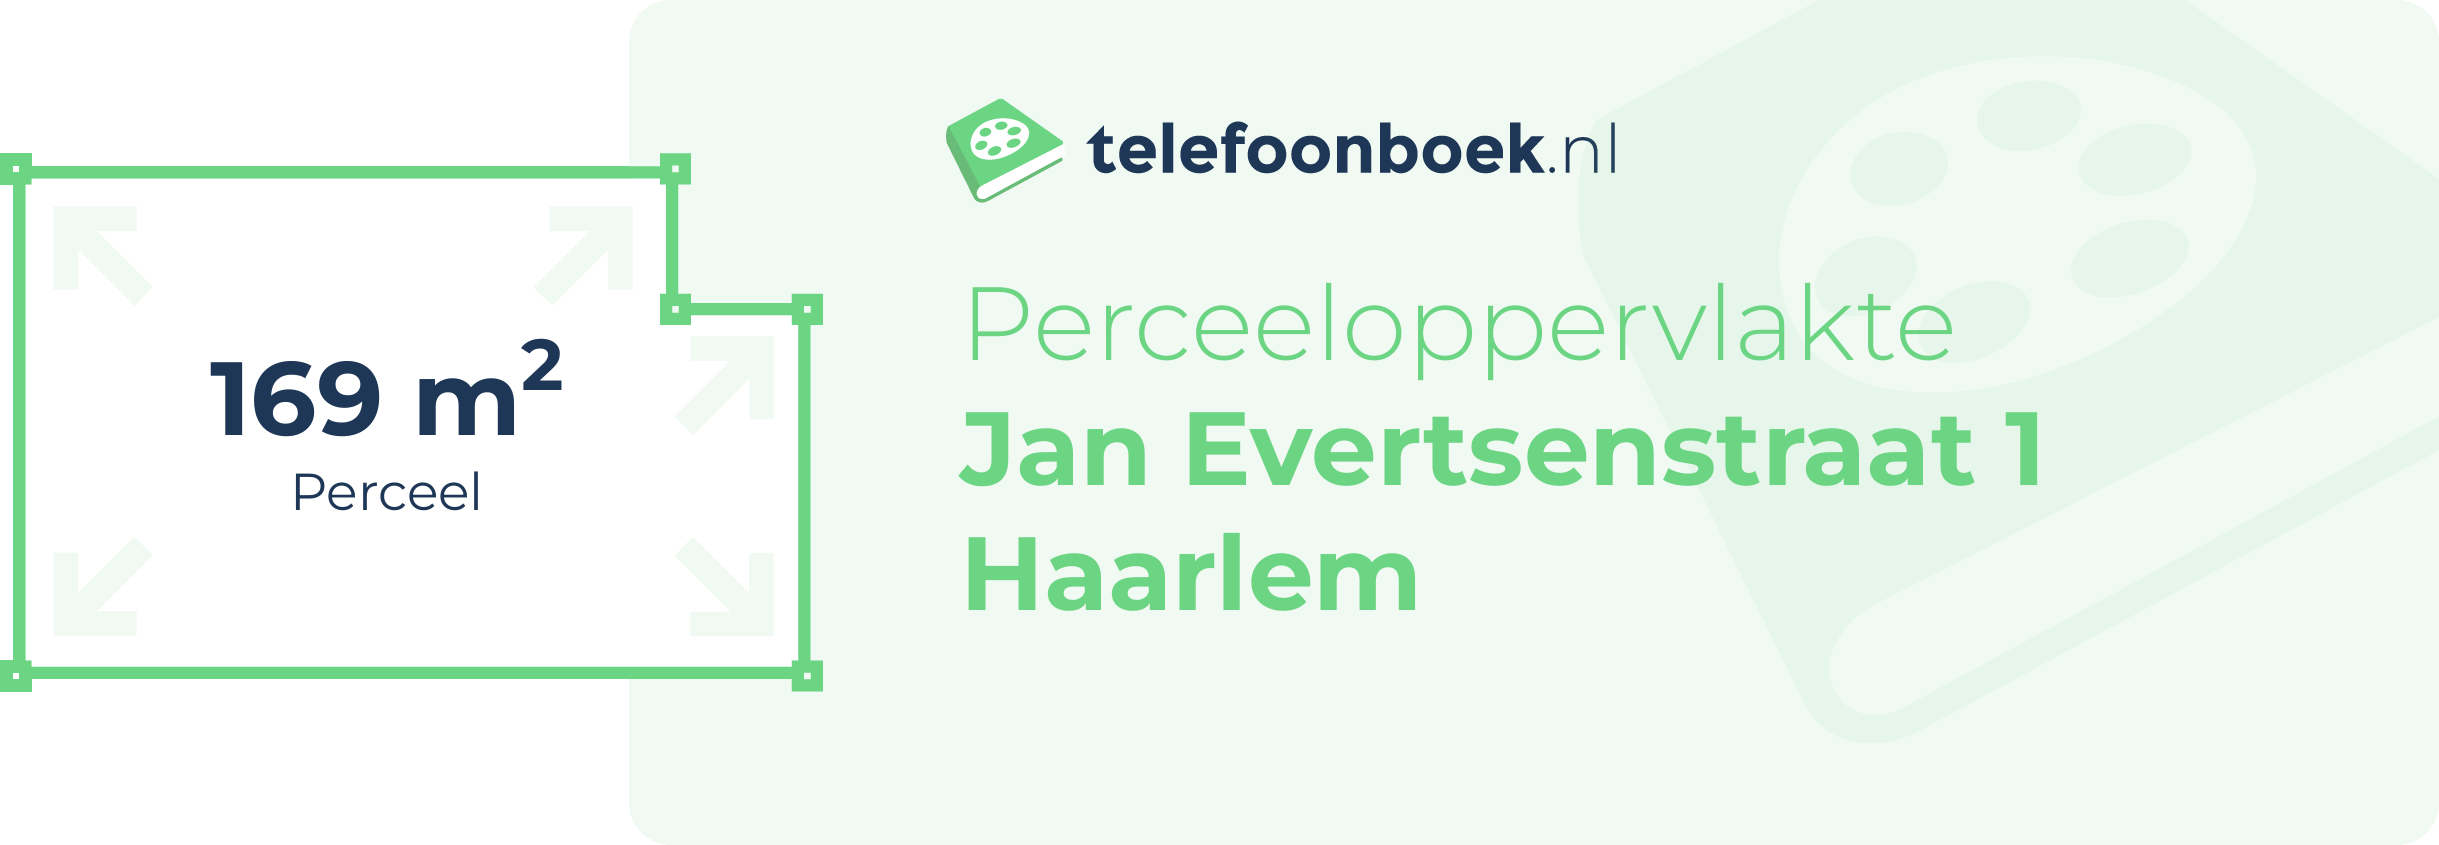 Perceeloppervlakte Jan Evertsenstraat 1 Haarlem